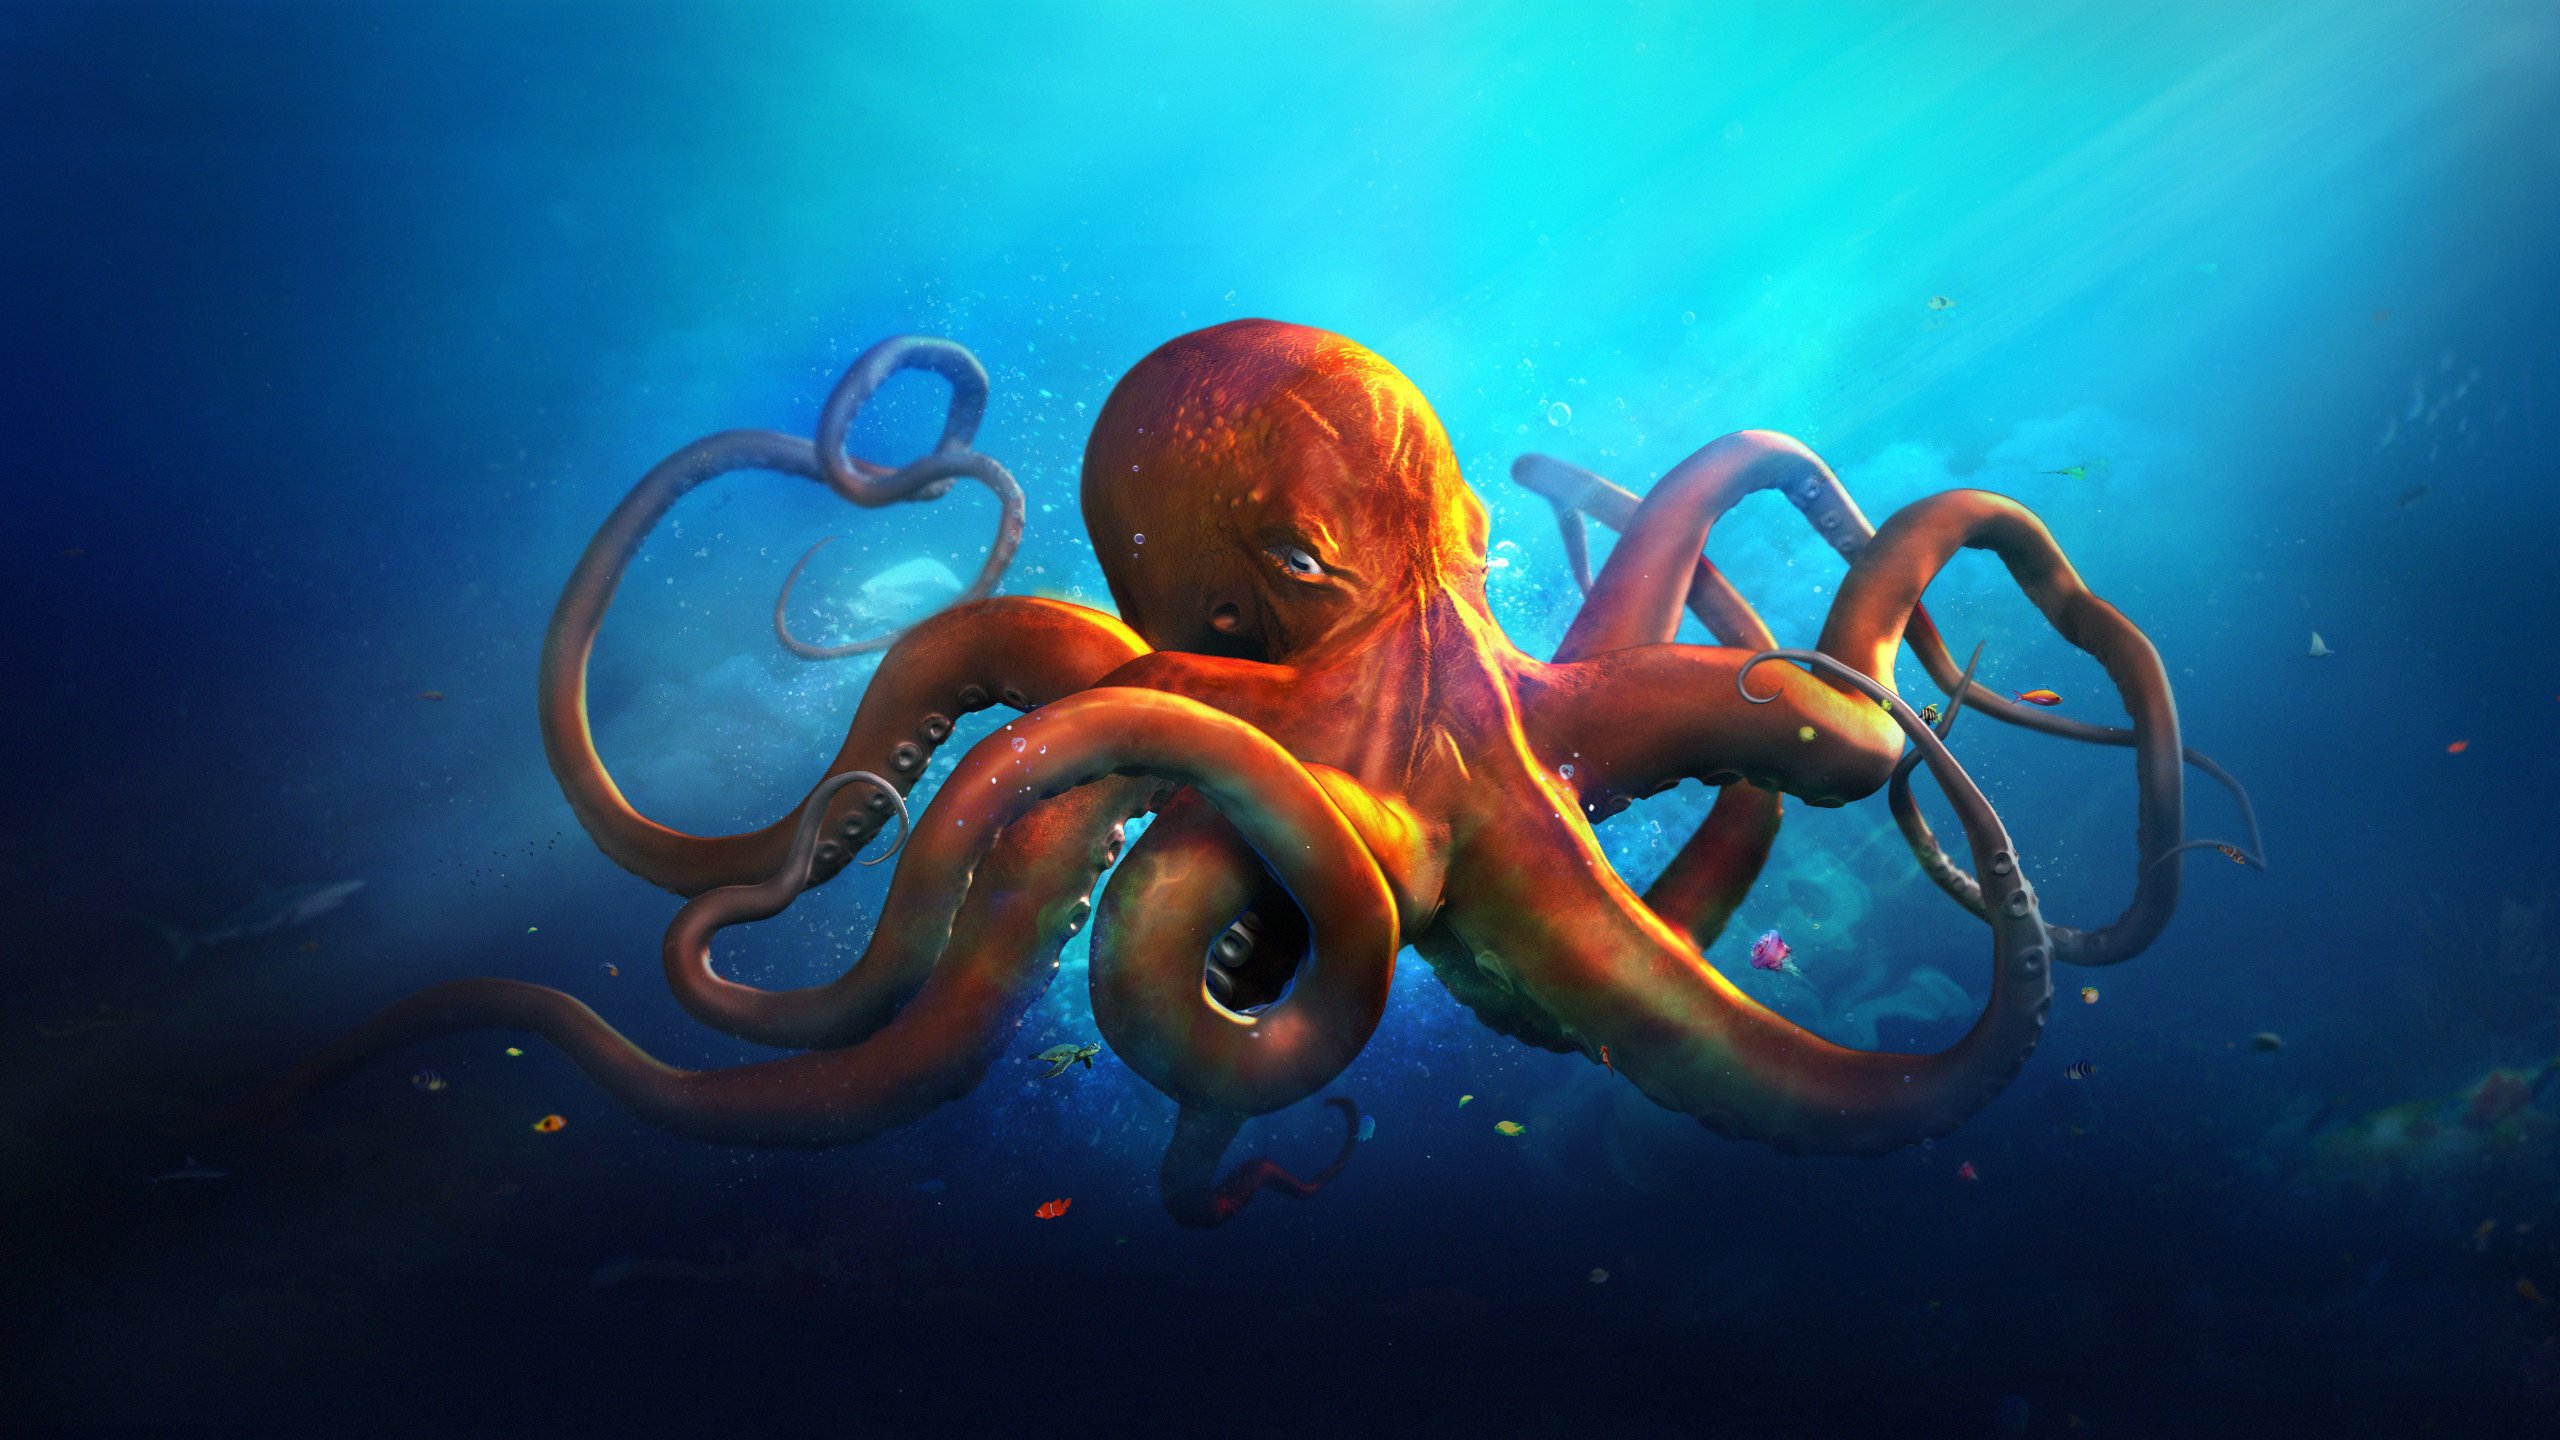 World Animals Octopus Ocean Sea Fantasy Artwork Art Wallpaper